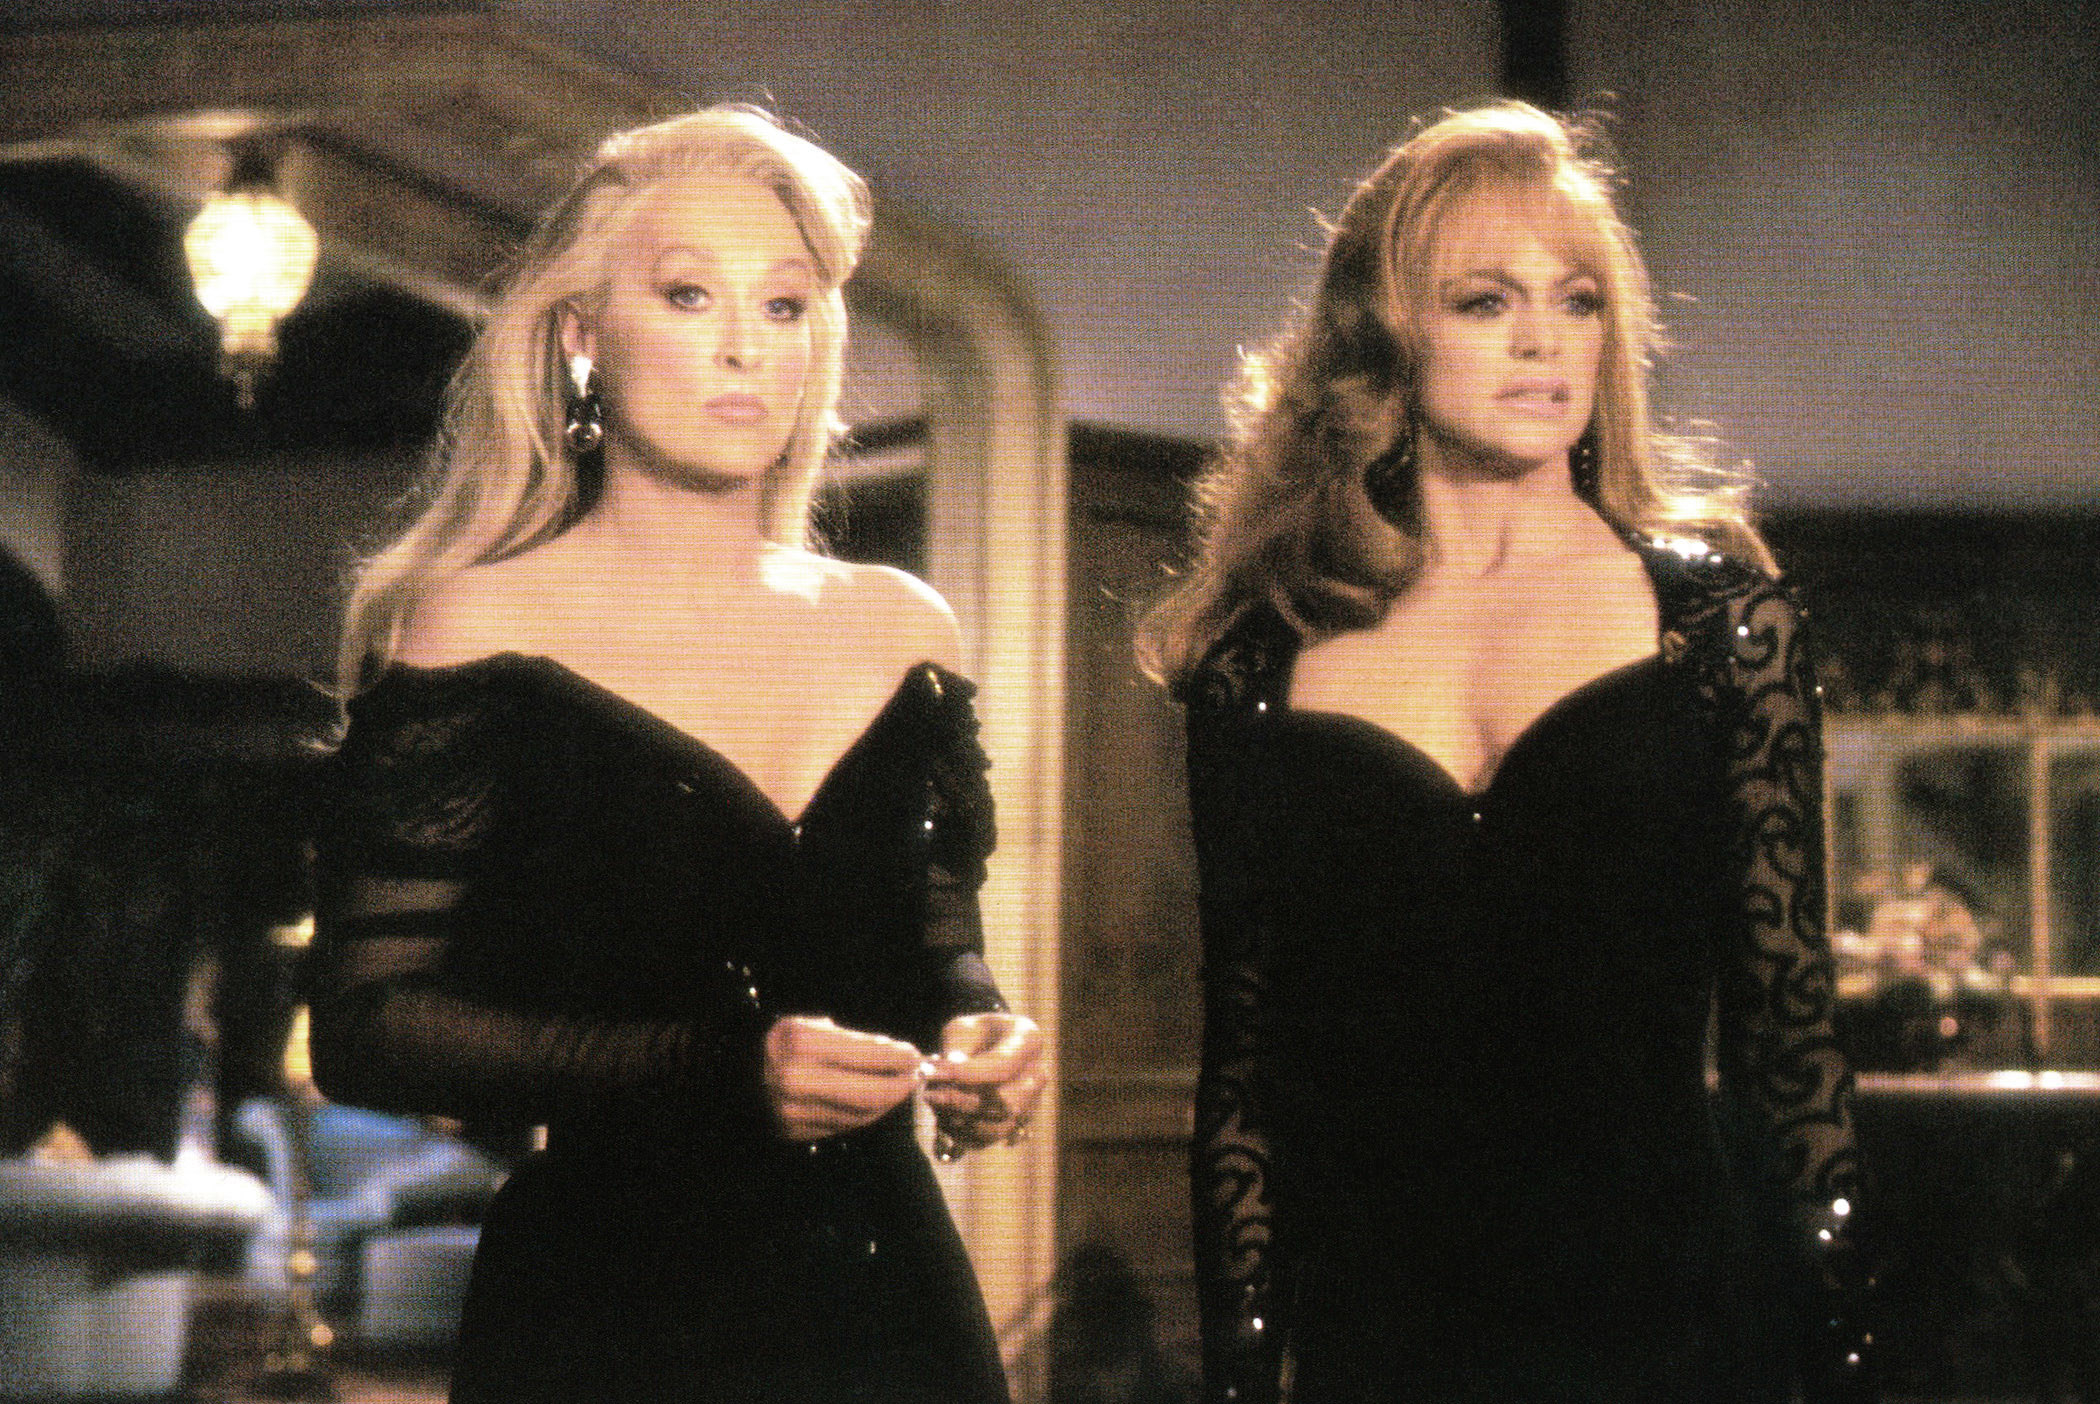 Meryl Streep and Goldie Hawn in black dresses